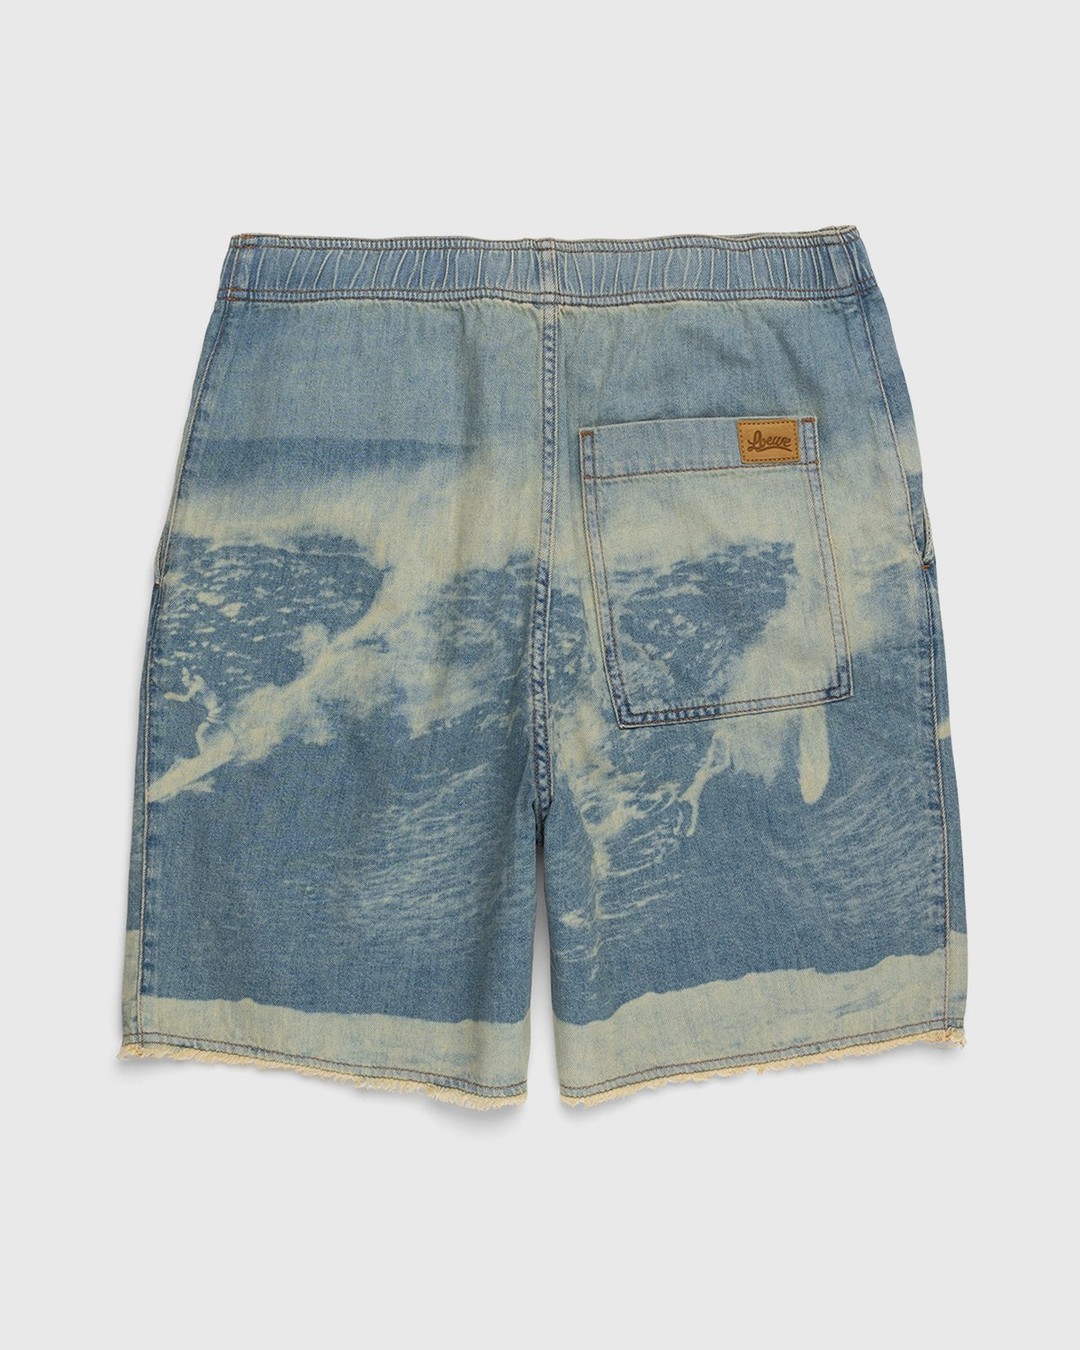 Loewe – Paula's Ibiza Surf Drawstring Denim Shorts Blue - Shorts - Blue - Image 2